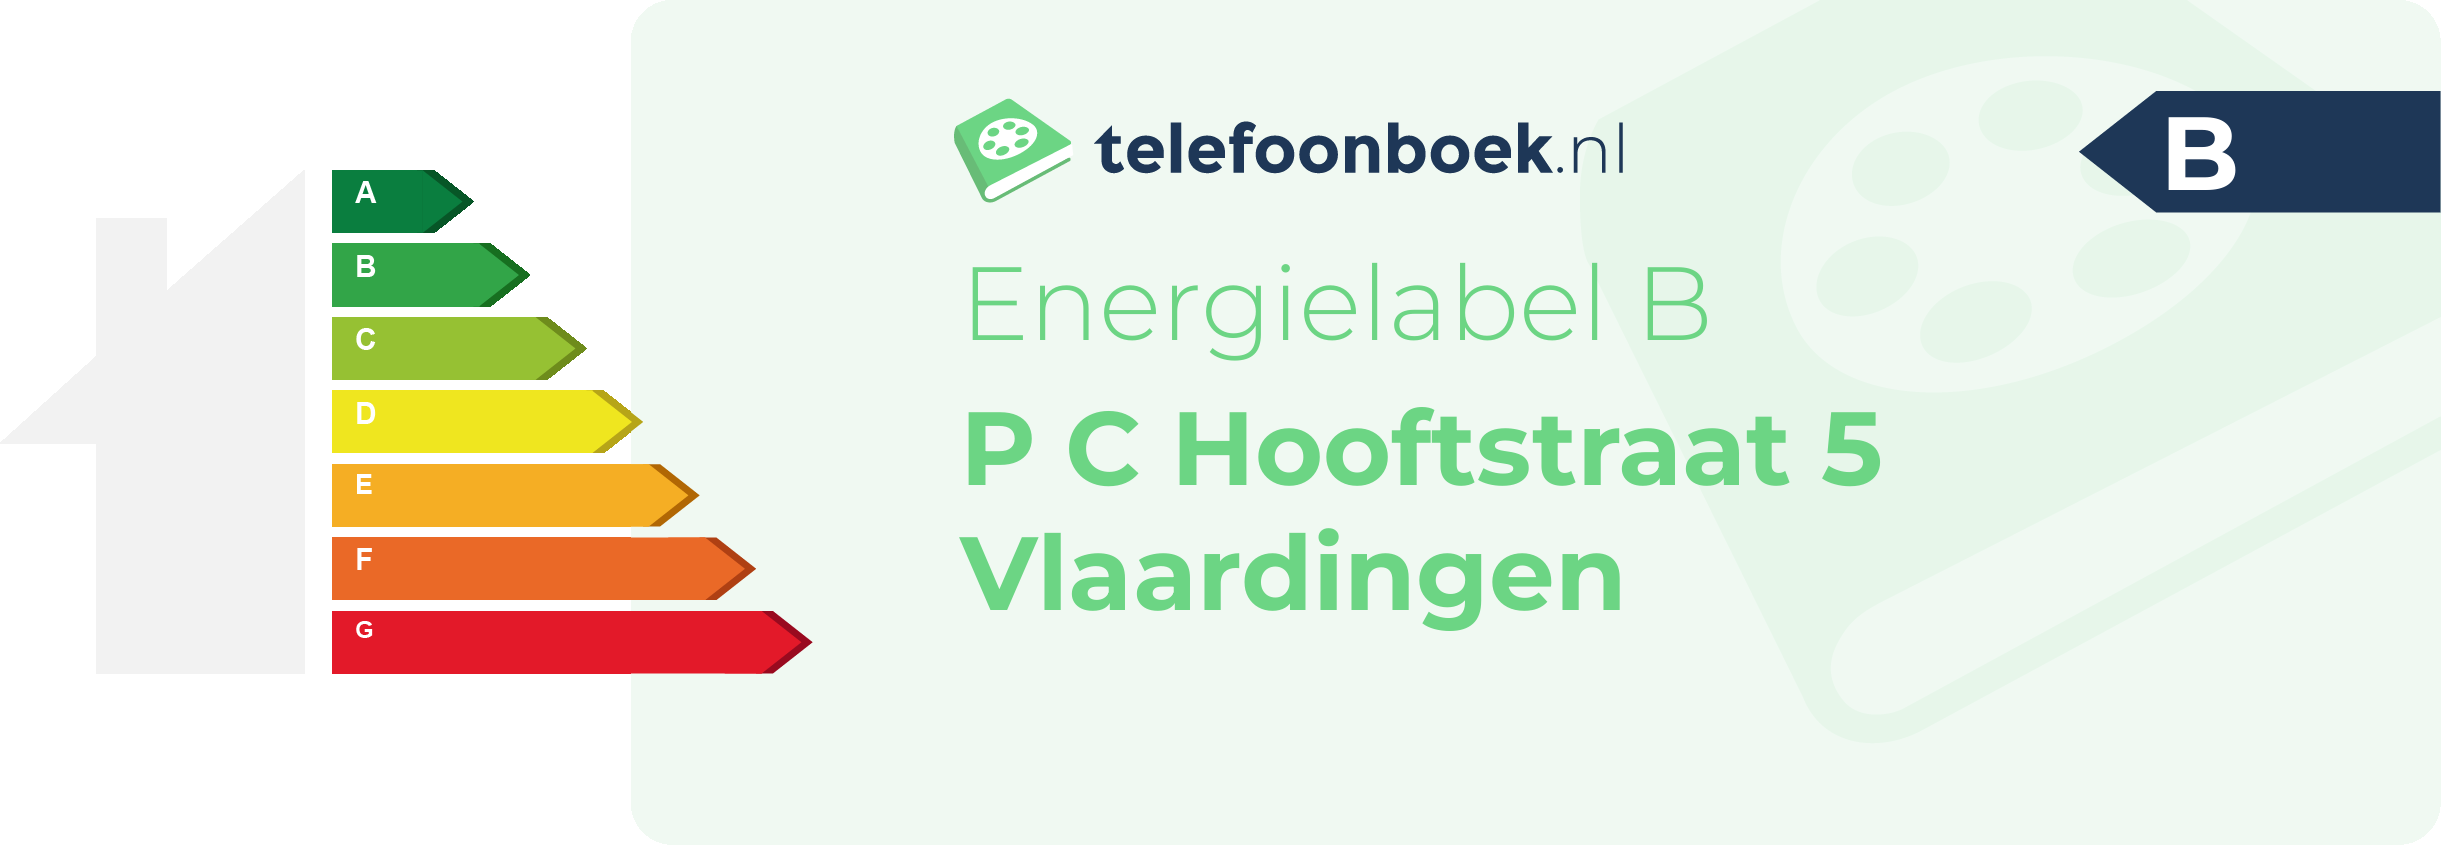 Energielabel P C Hooftstraat 5 Vlaardingen